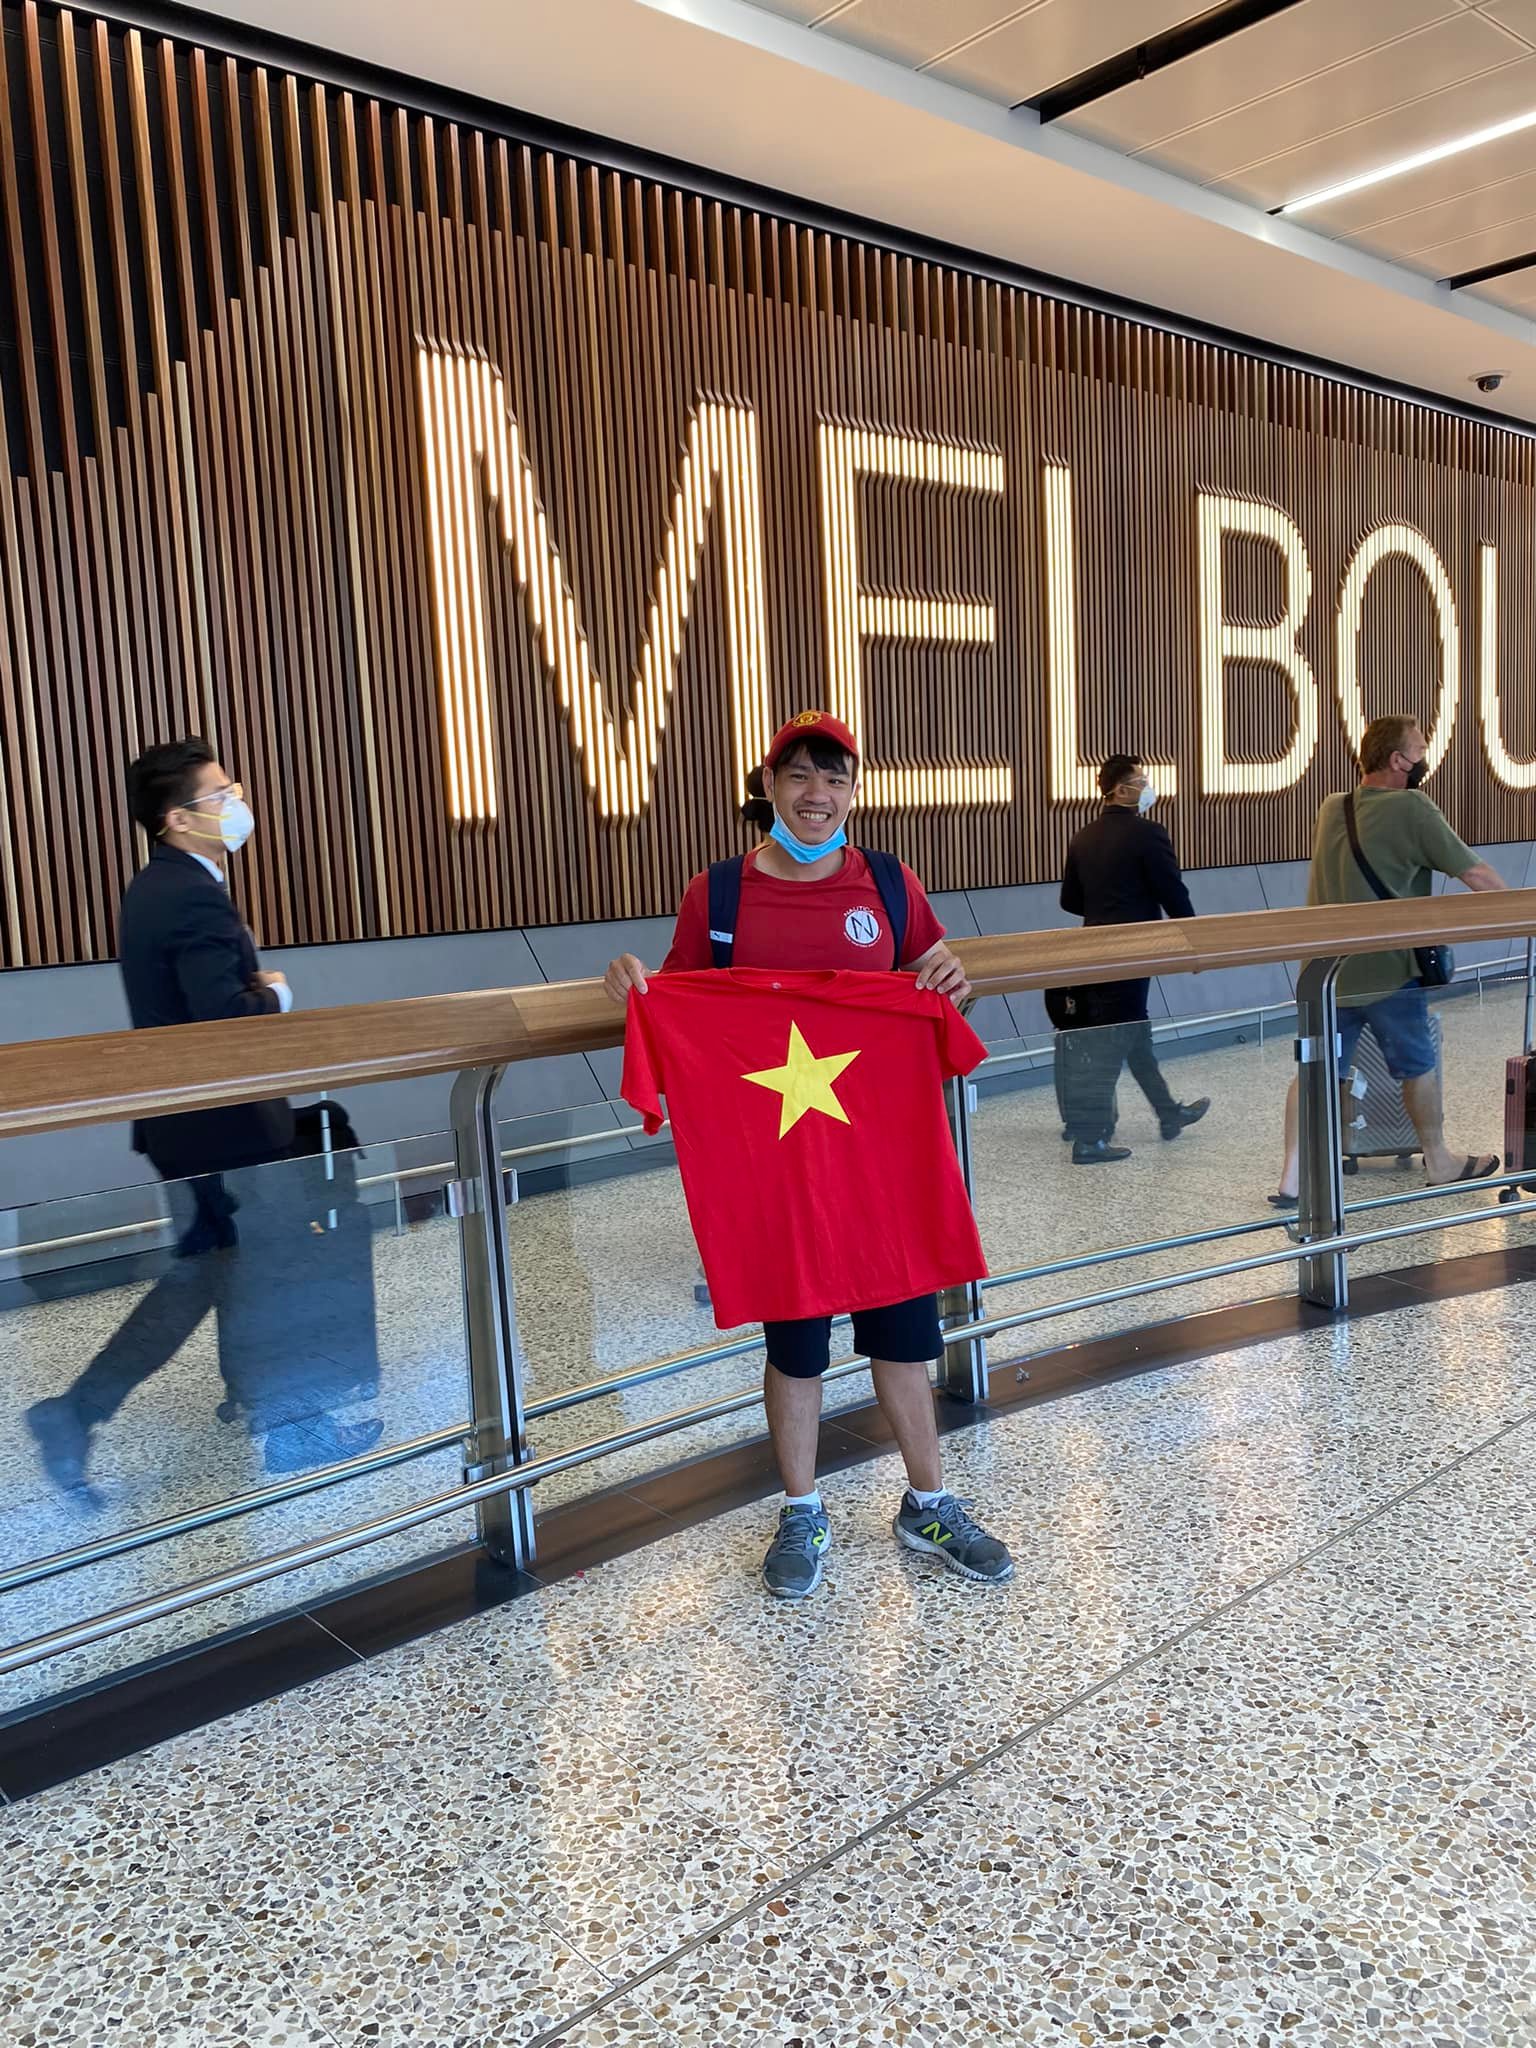 CĐV đặc biệt được chụp ảnh với đội tuyển Việt Nam tại Australia - Ảnh 7.